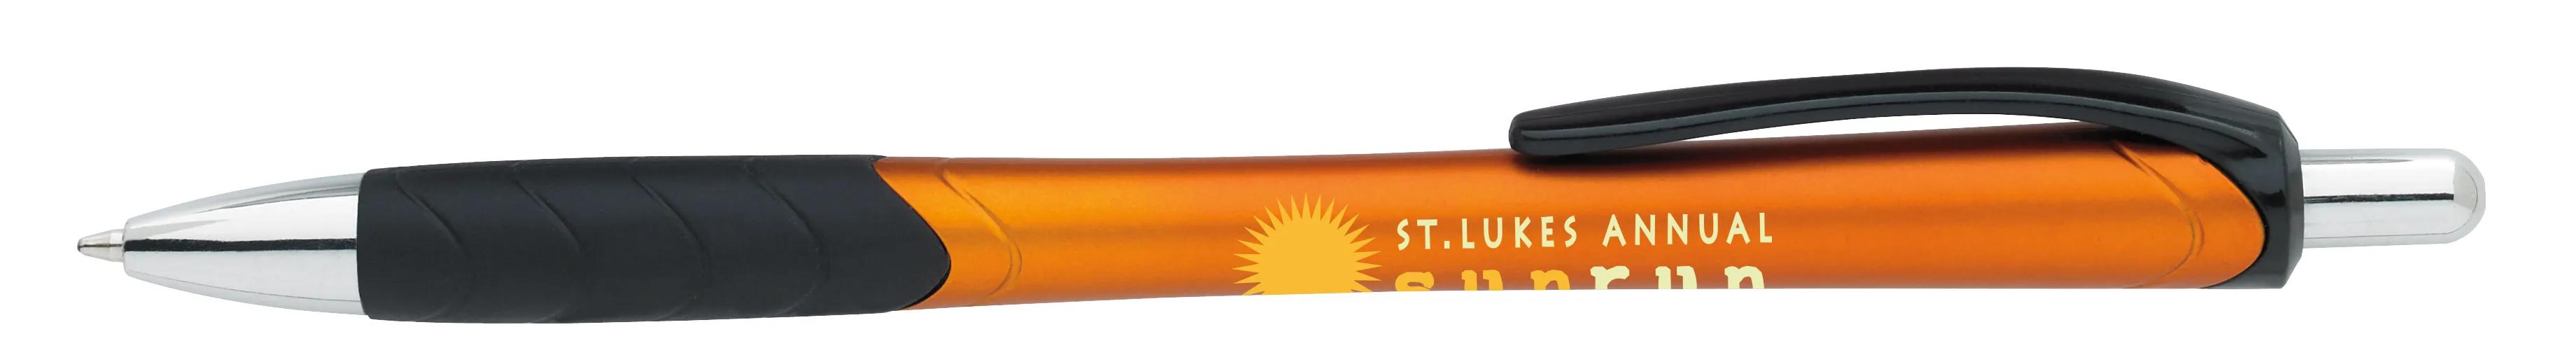 Metallic Slim Pen 30 of 31